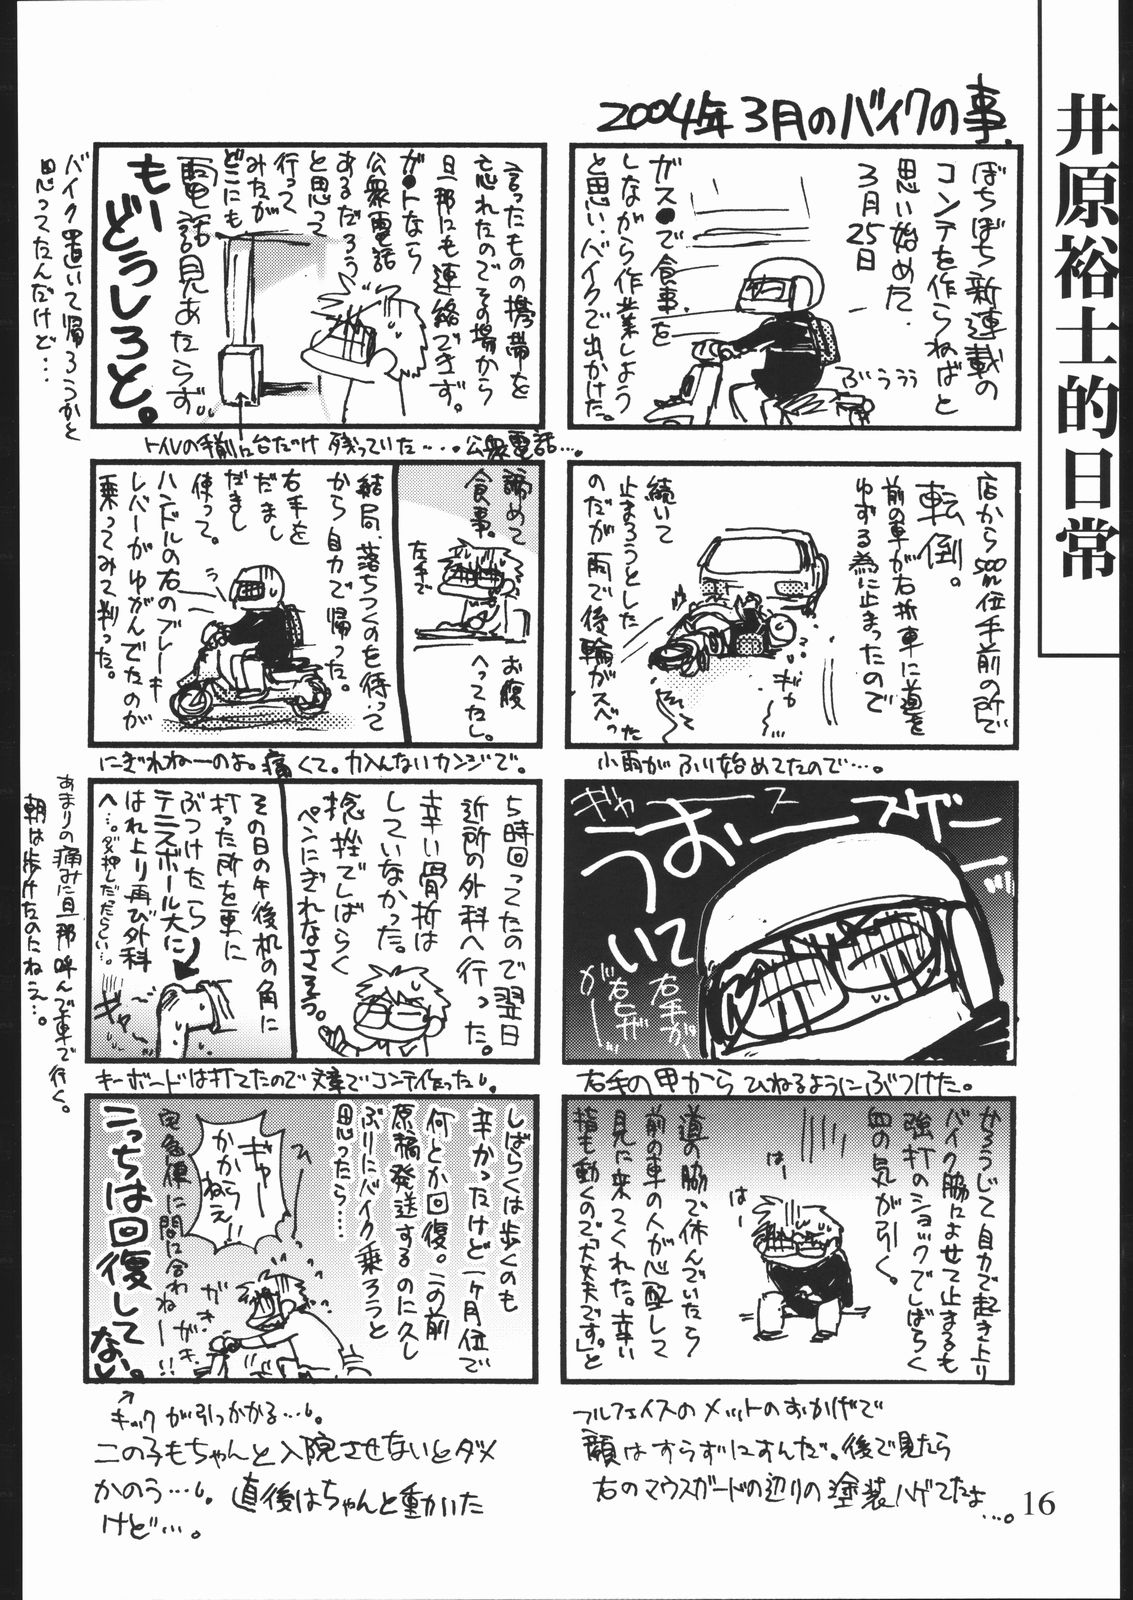 [井ノ頭研究所] 雑記帳2004夏